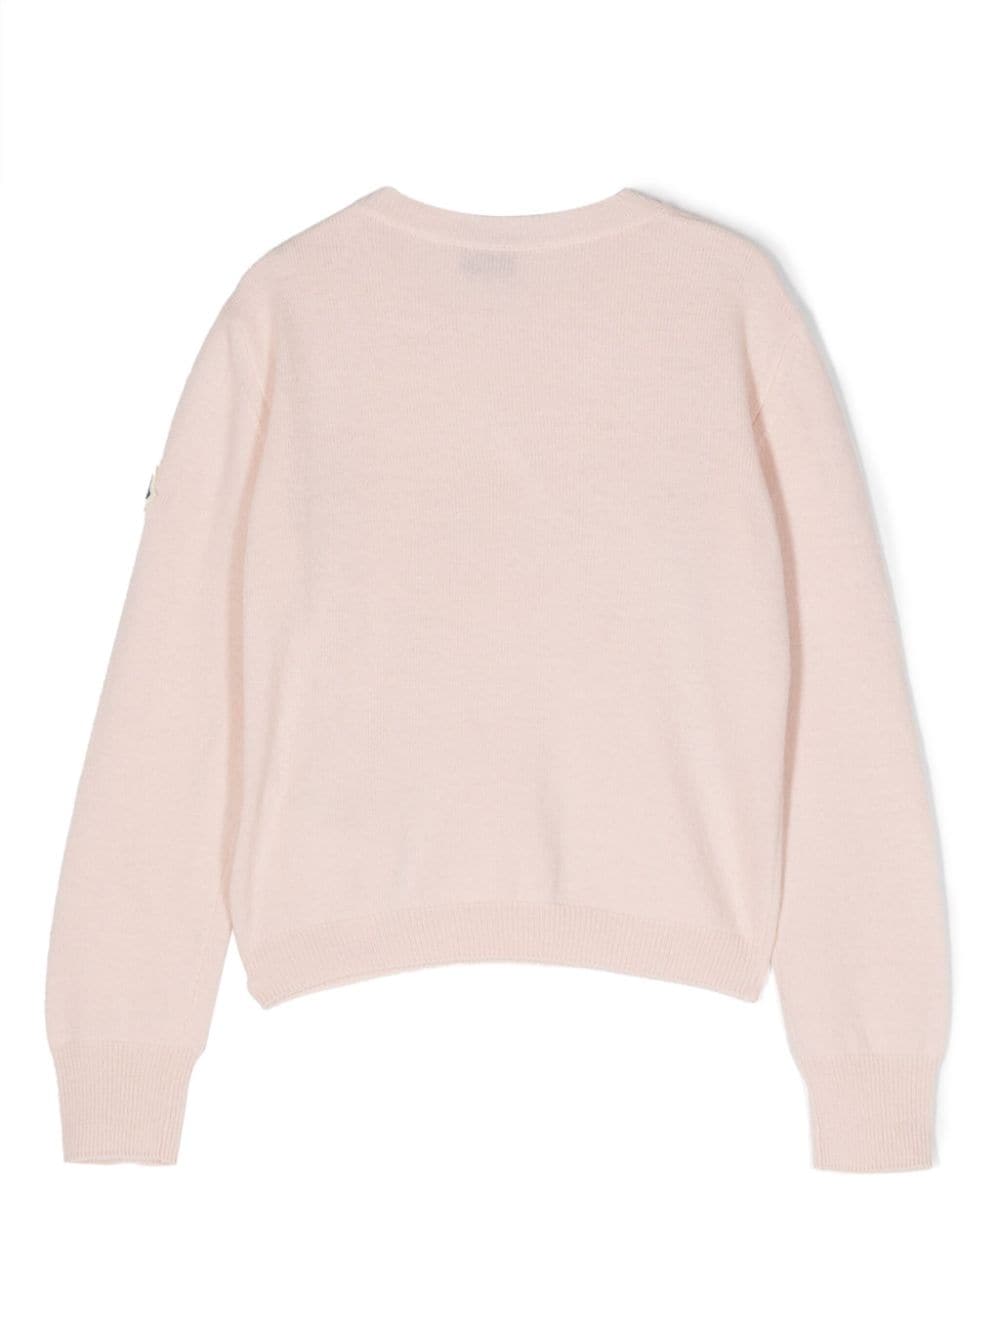 Moncler Enfant crystal-embellished logo sweatshirt - Roze